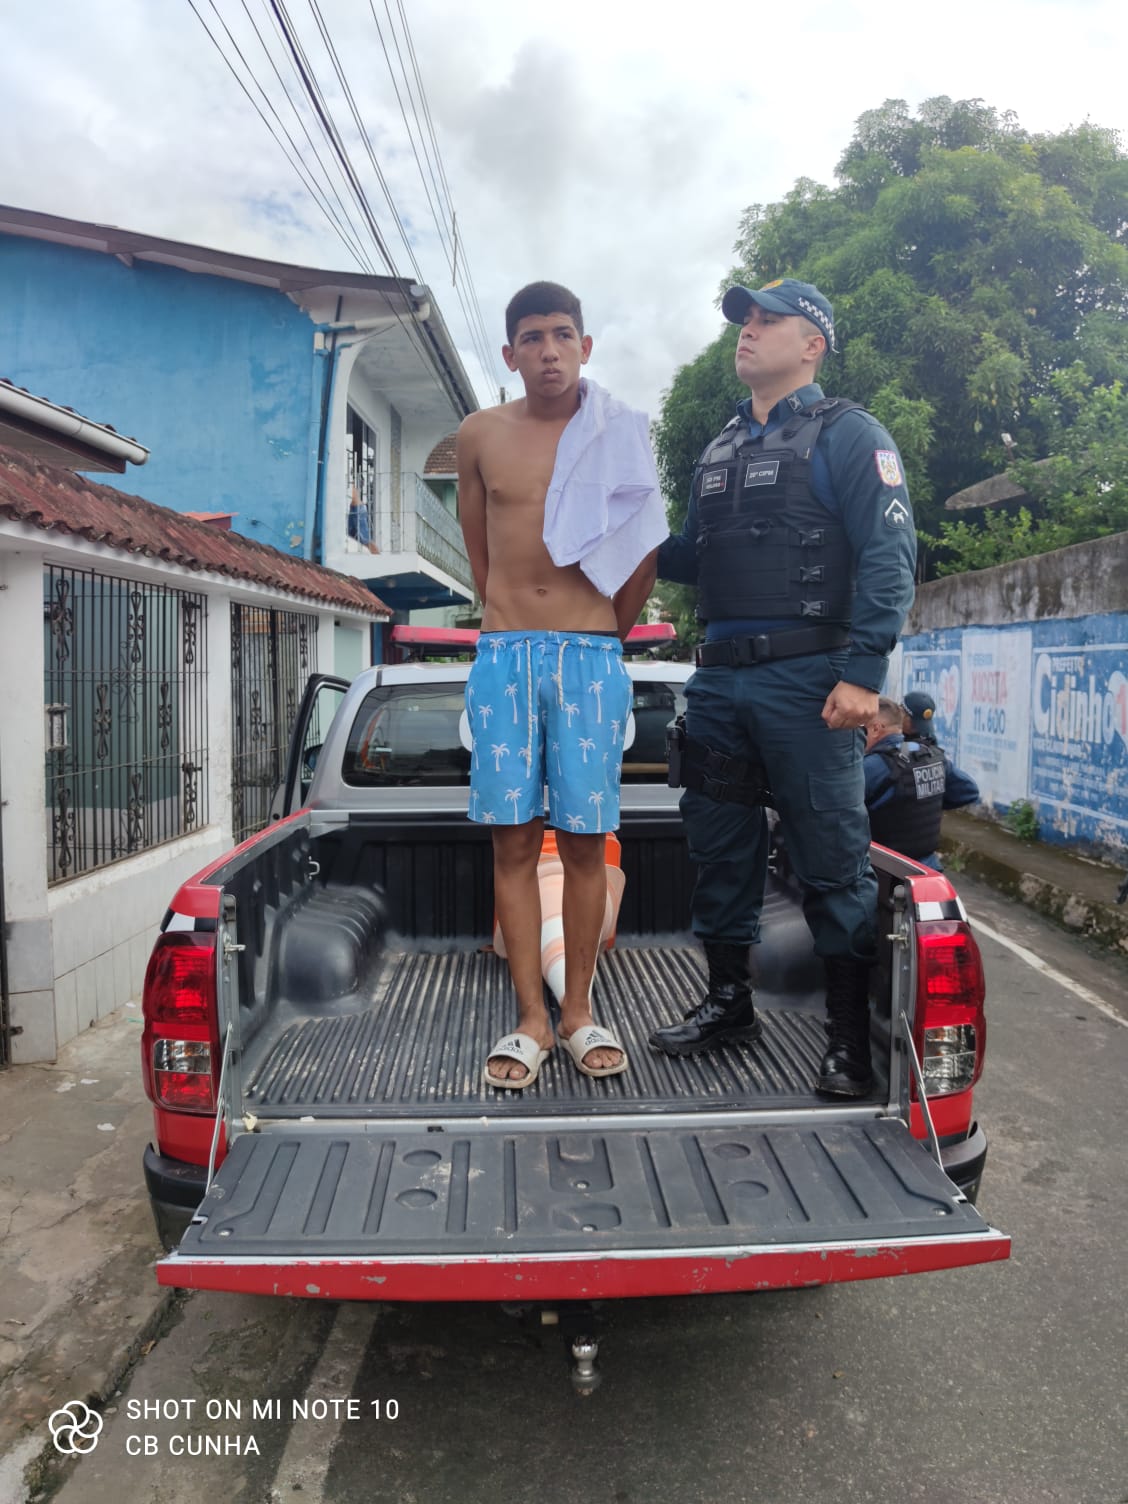 Vídeo: "Zé Vaqueiro" é preso com drogas escondidas no sapato